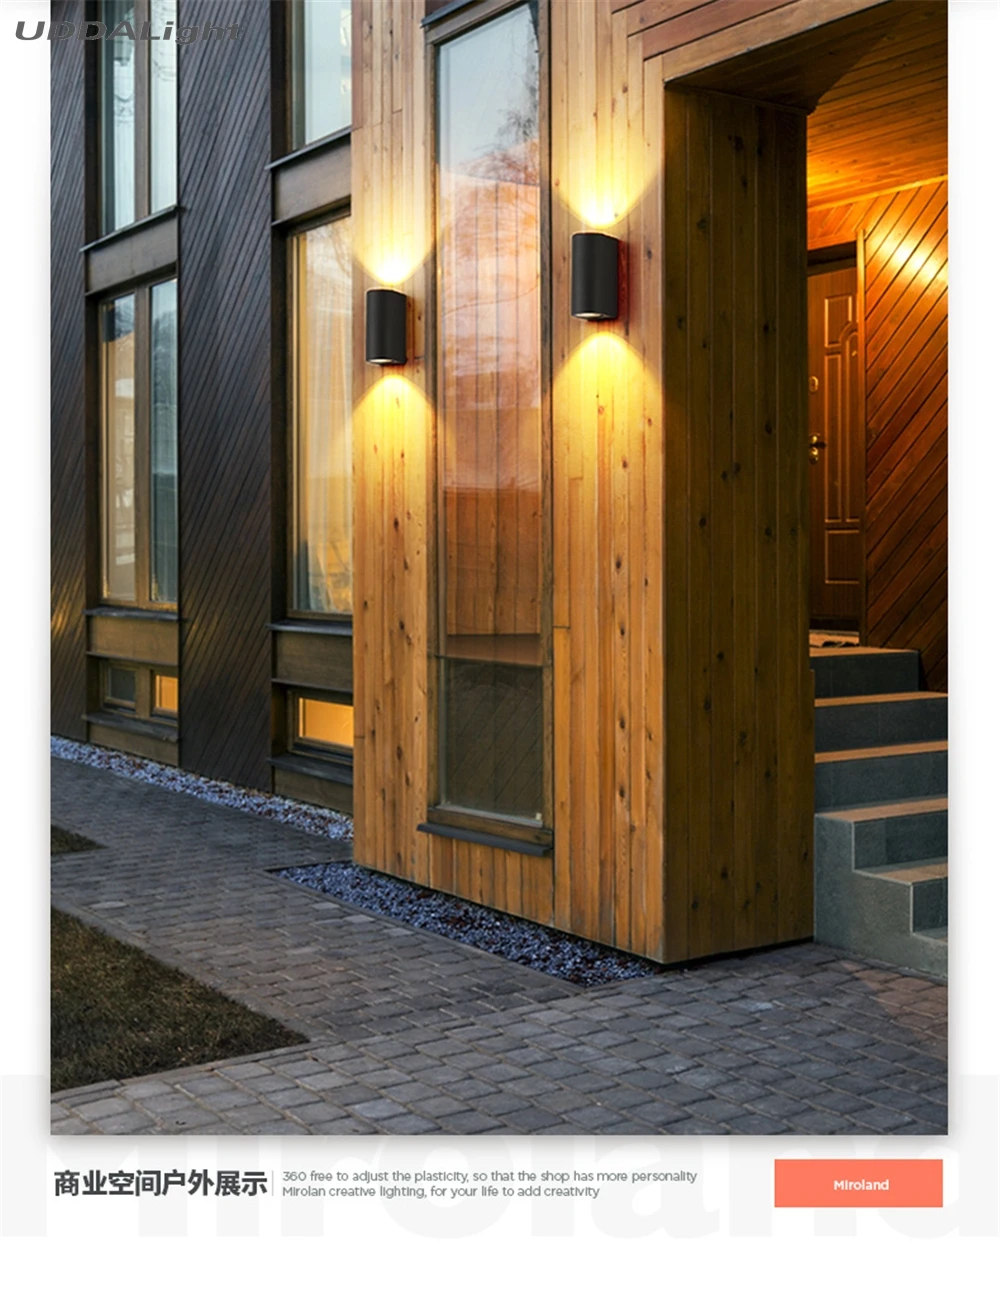 Светодиодный настенный светильник для улицы, 6 Вт, 3 Вт, COB светодиодный, для фасадов, квадратов, коридоров, дворов, террасов, украшения, wandlamp, для улицы